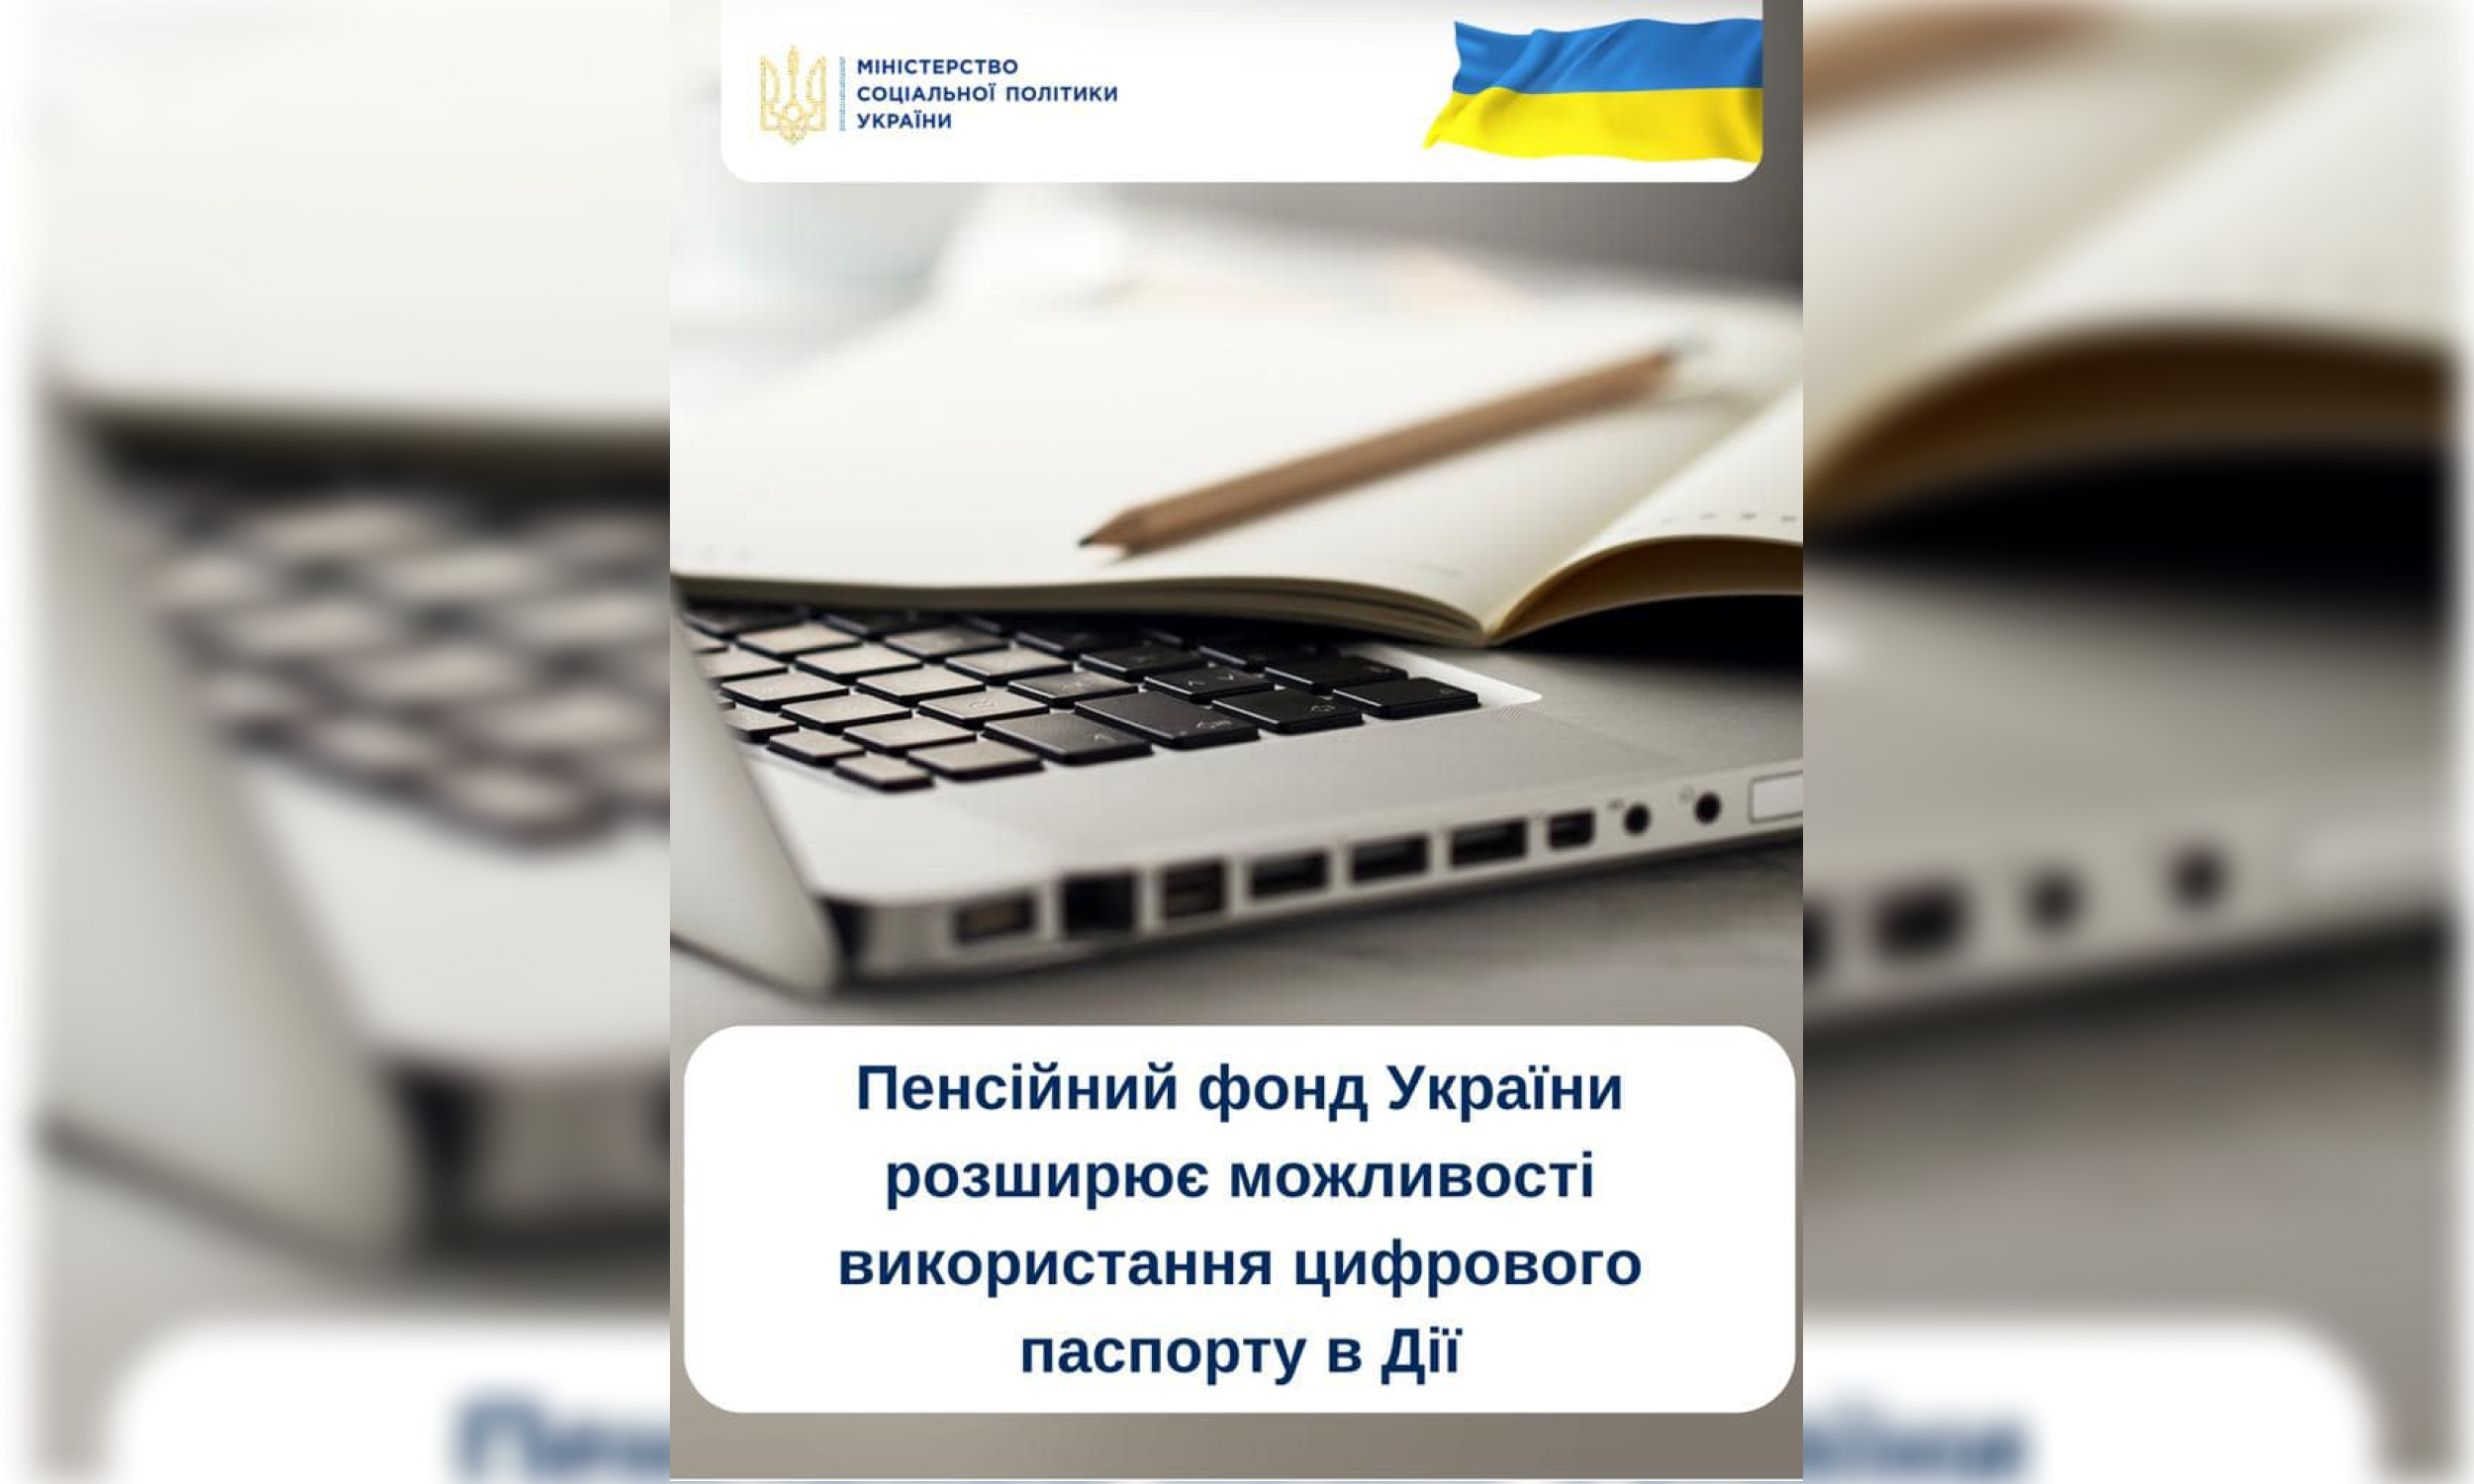 Пенсійний фонд України розширює можливості використання цифрового паспорту в Дія